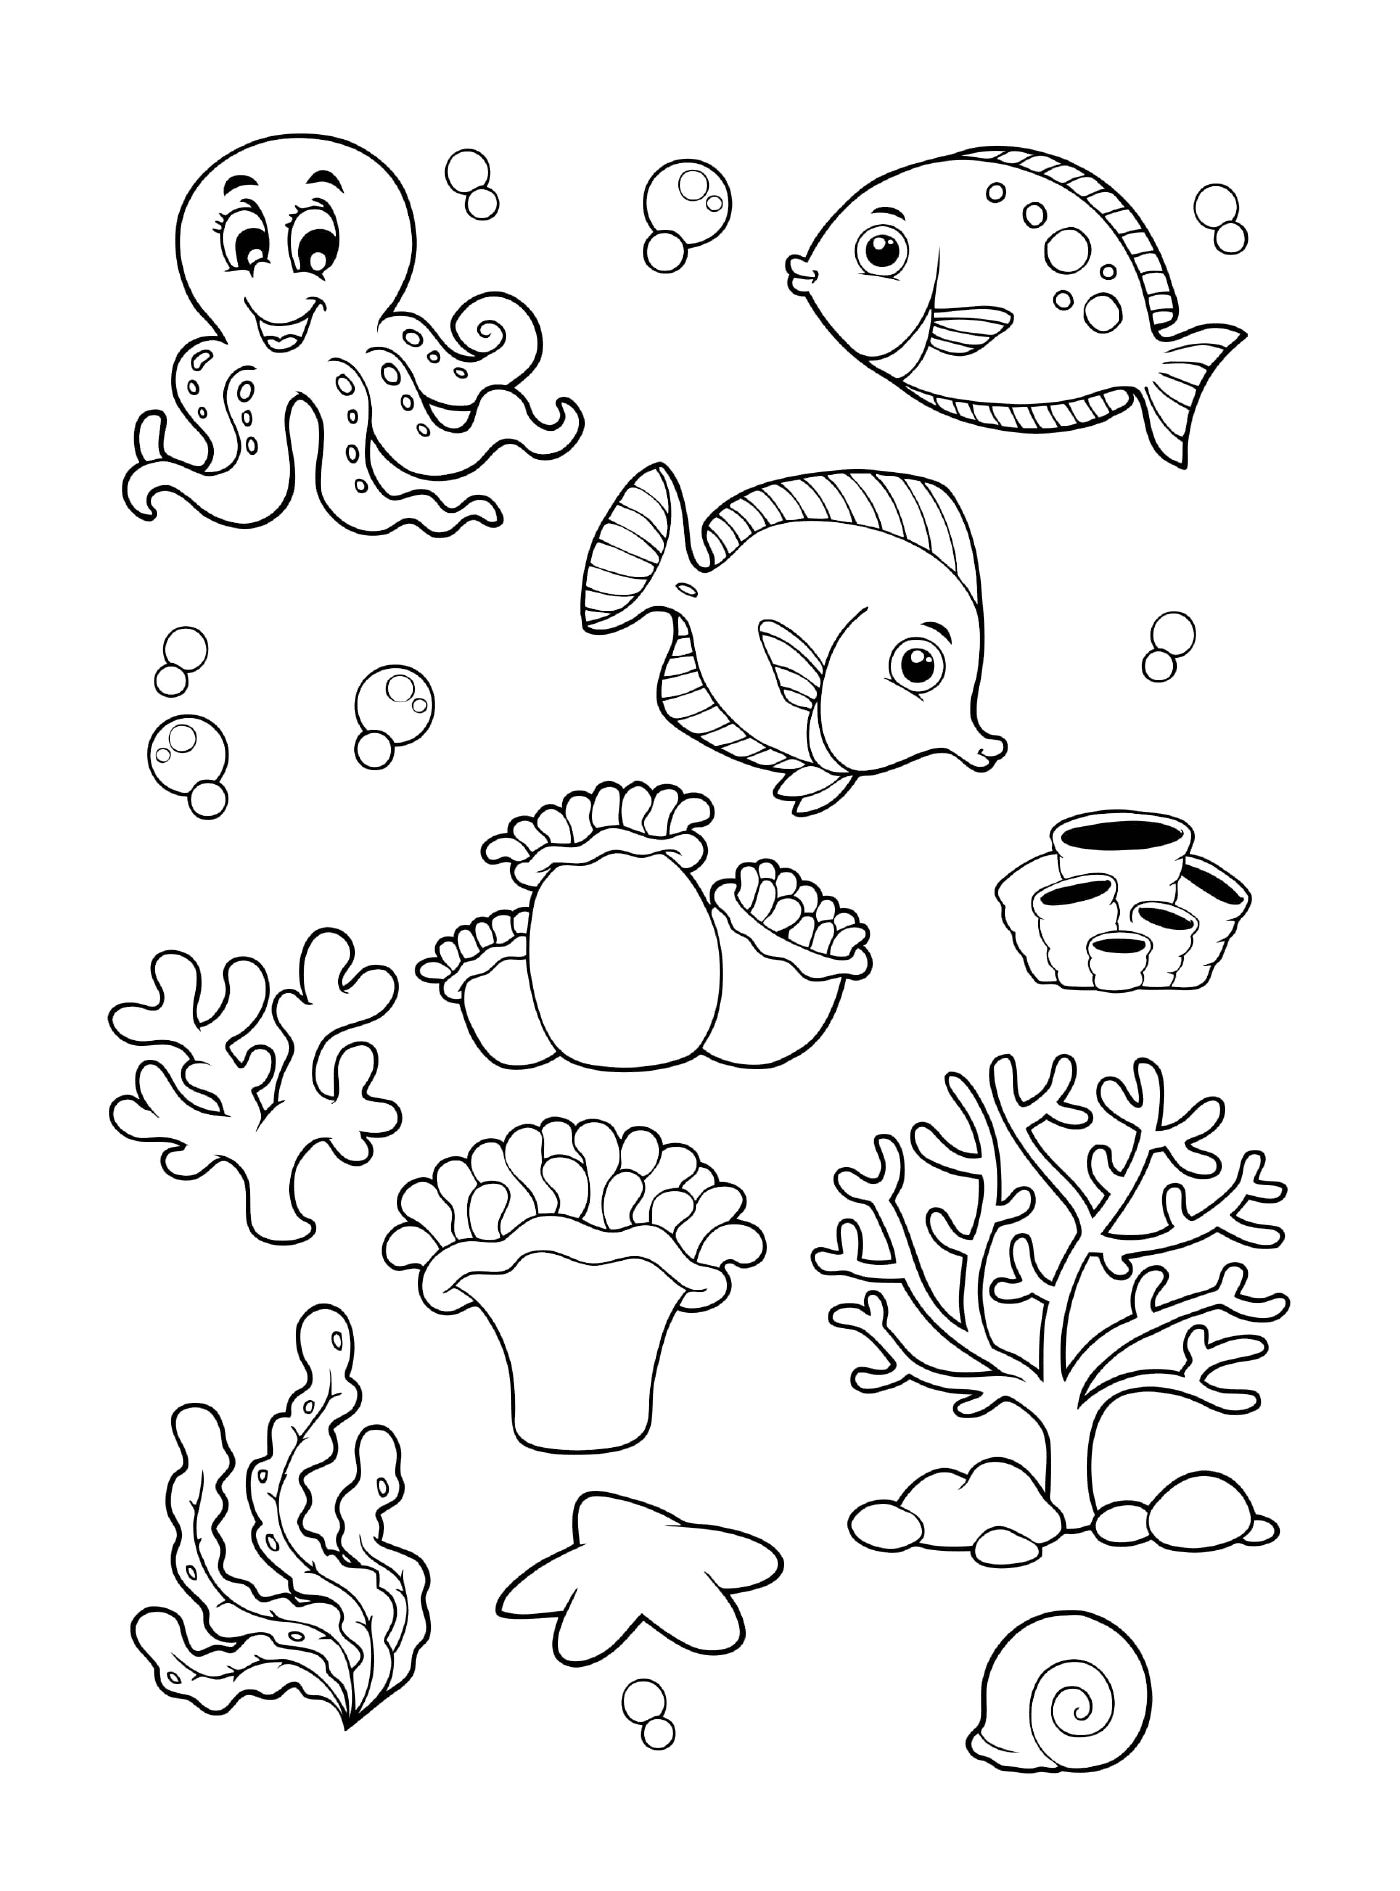  Eine Sammlung von Meerestieren für Kinder 